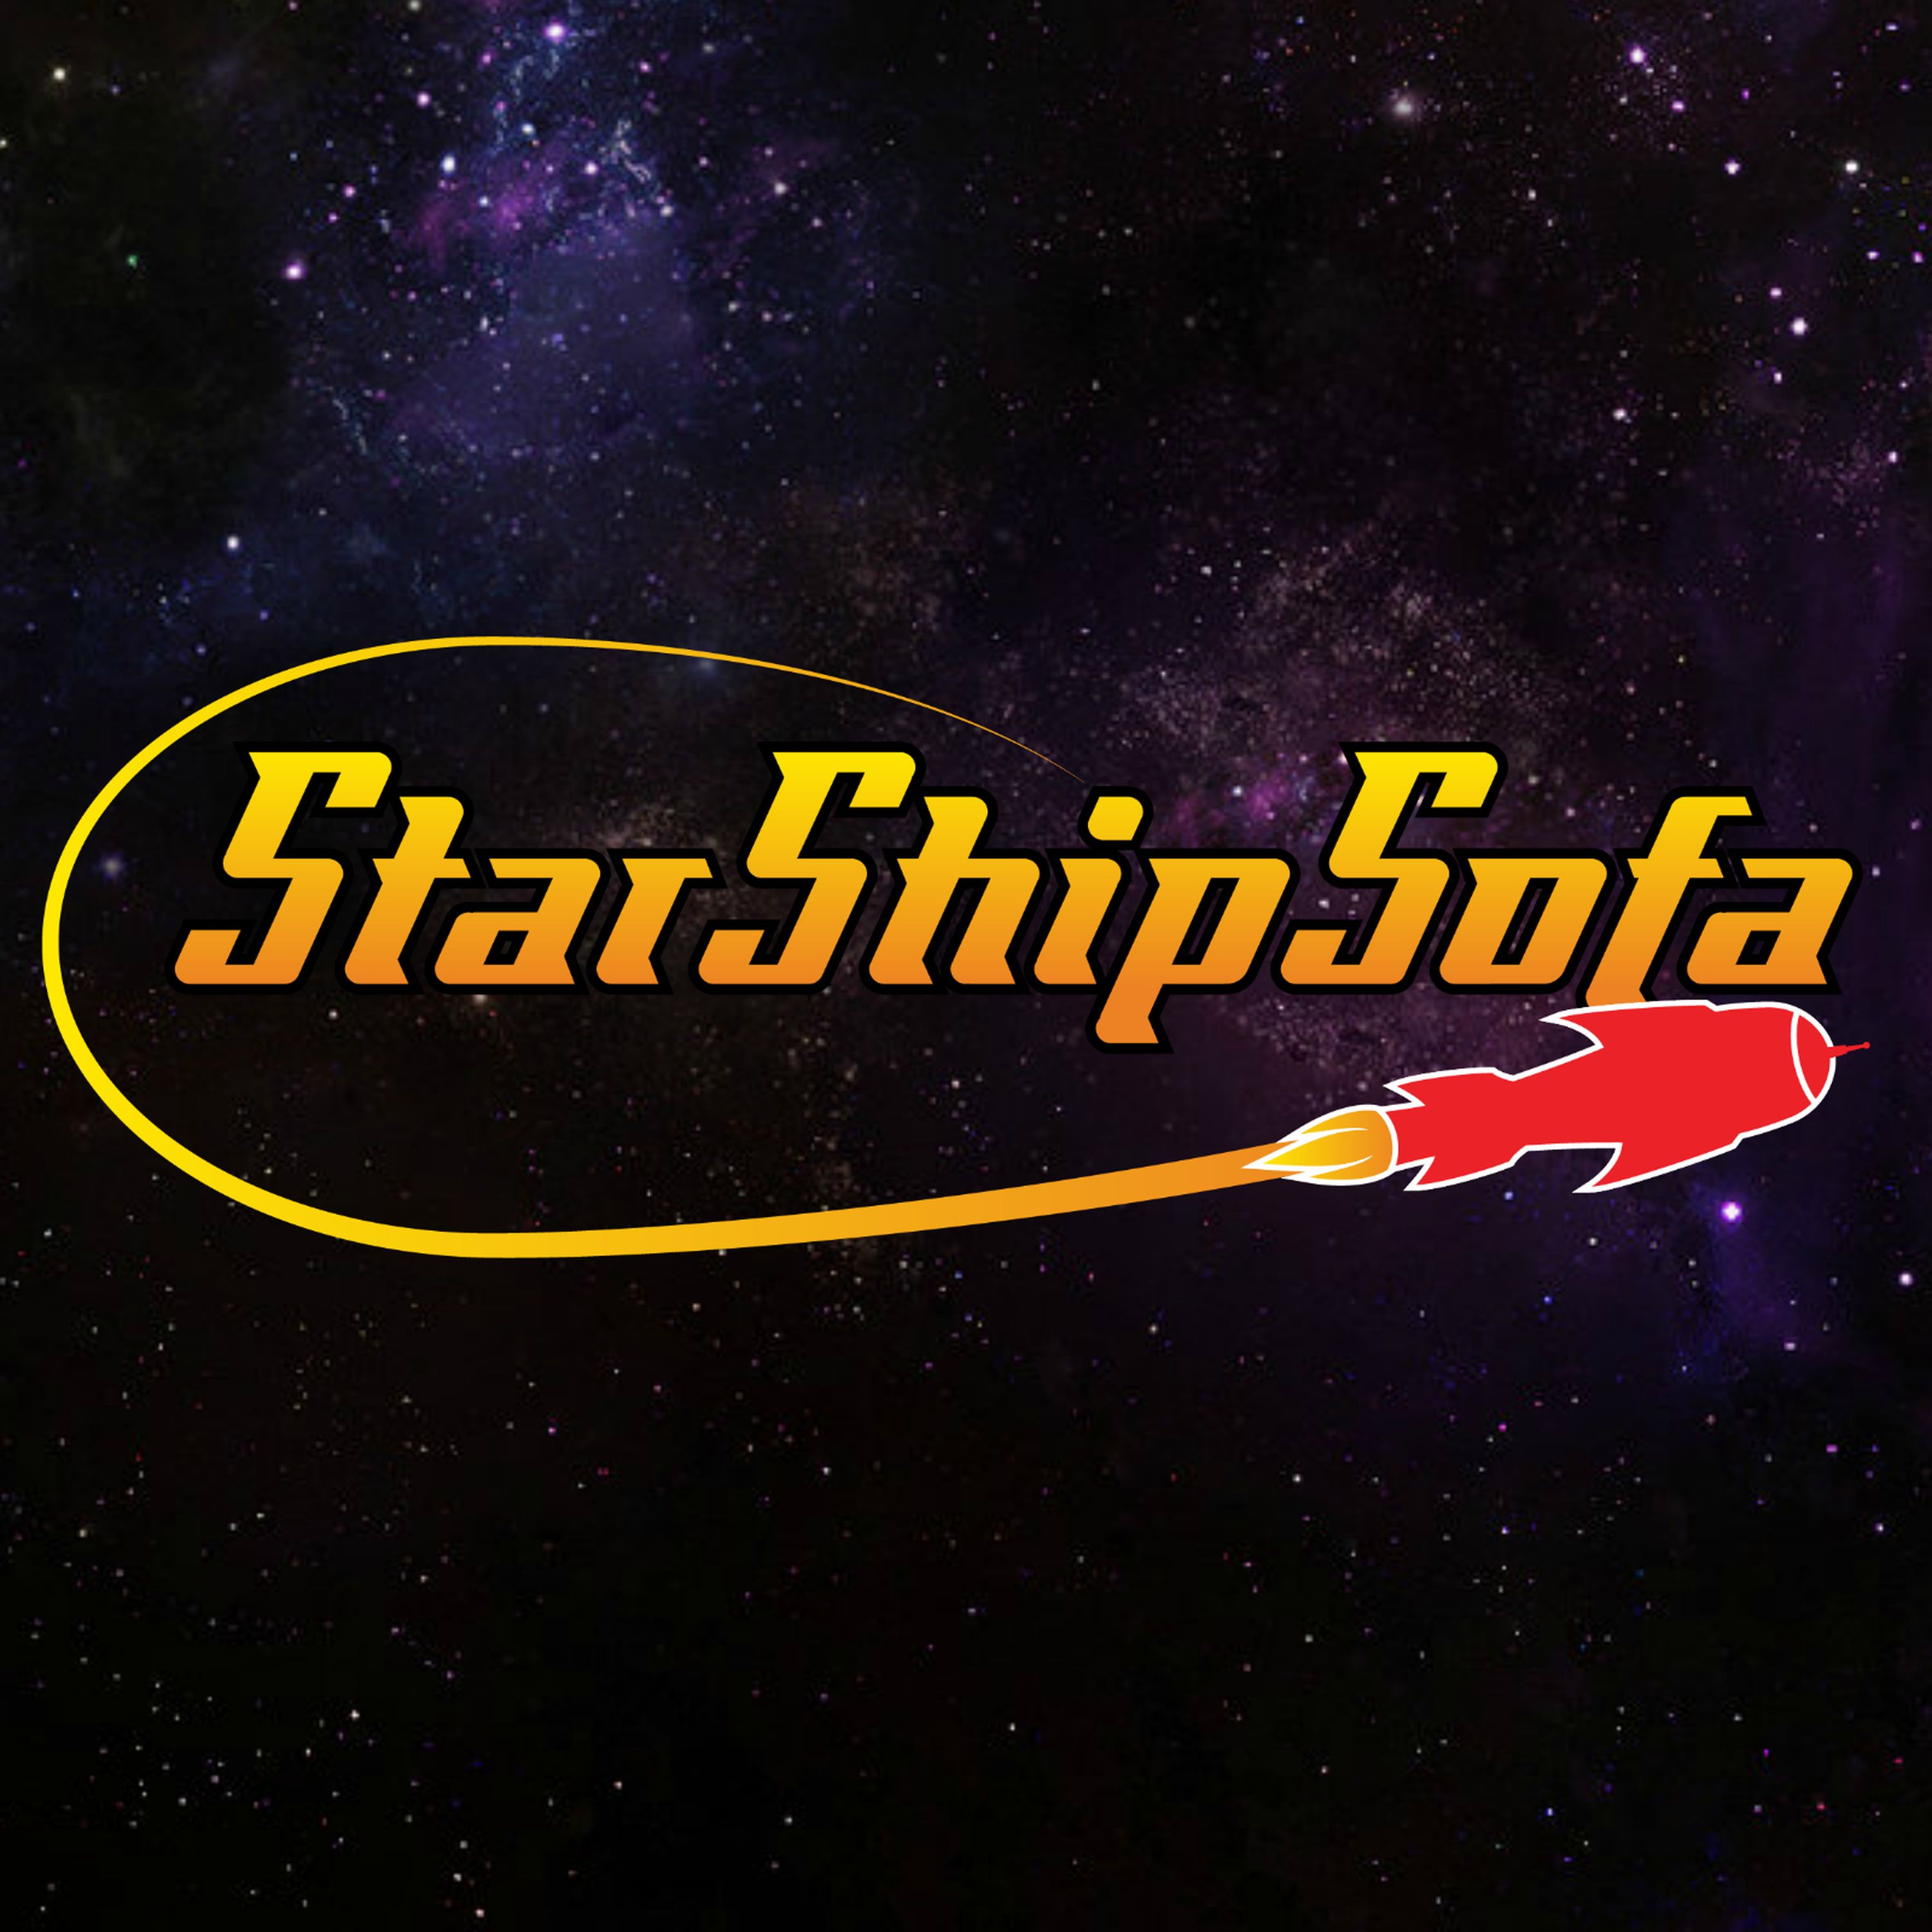 StarShipSofa No 623 Dave Kavanaugh